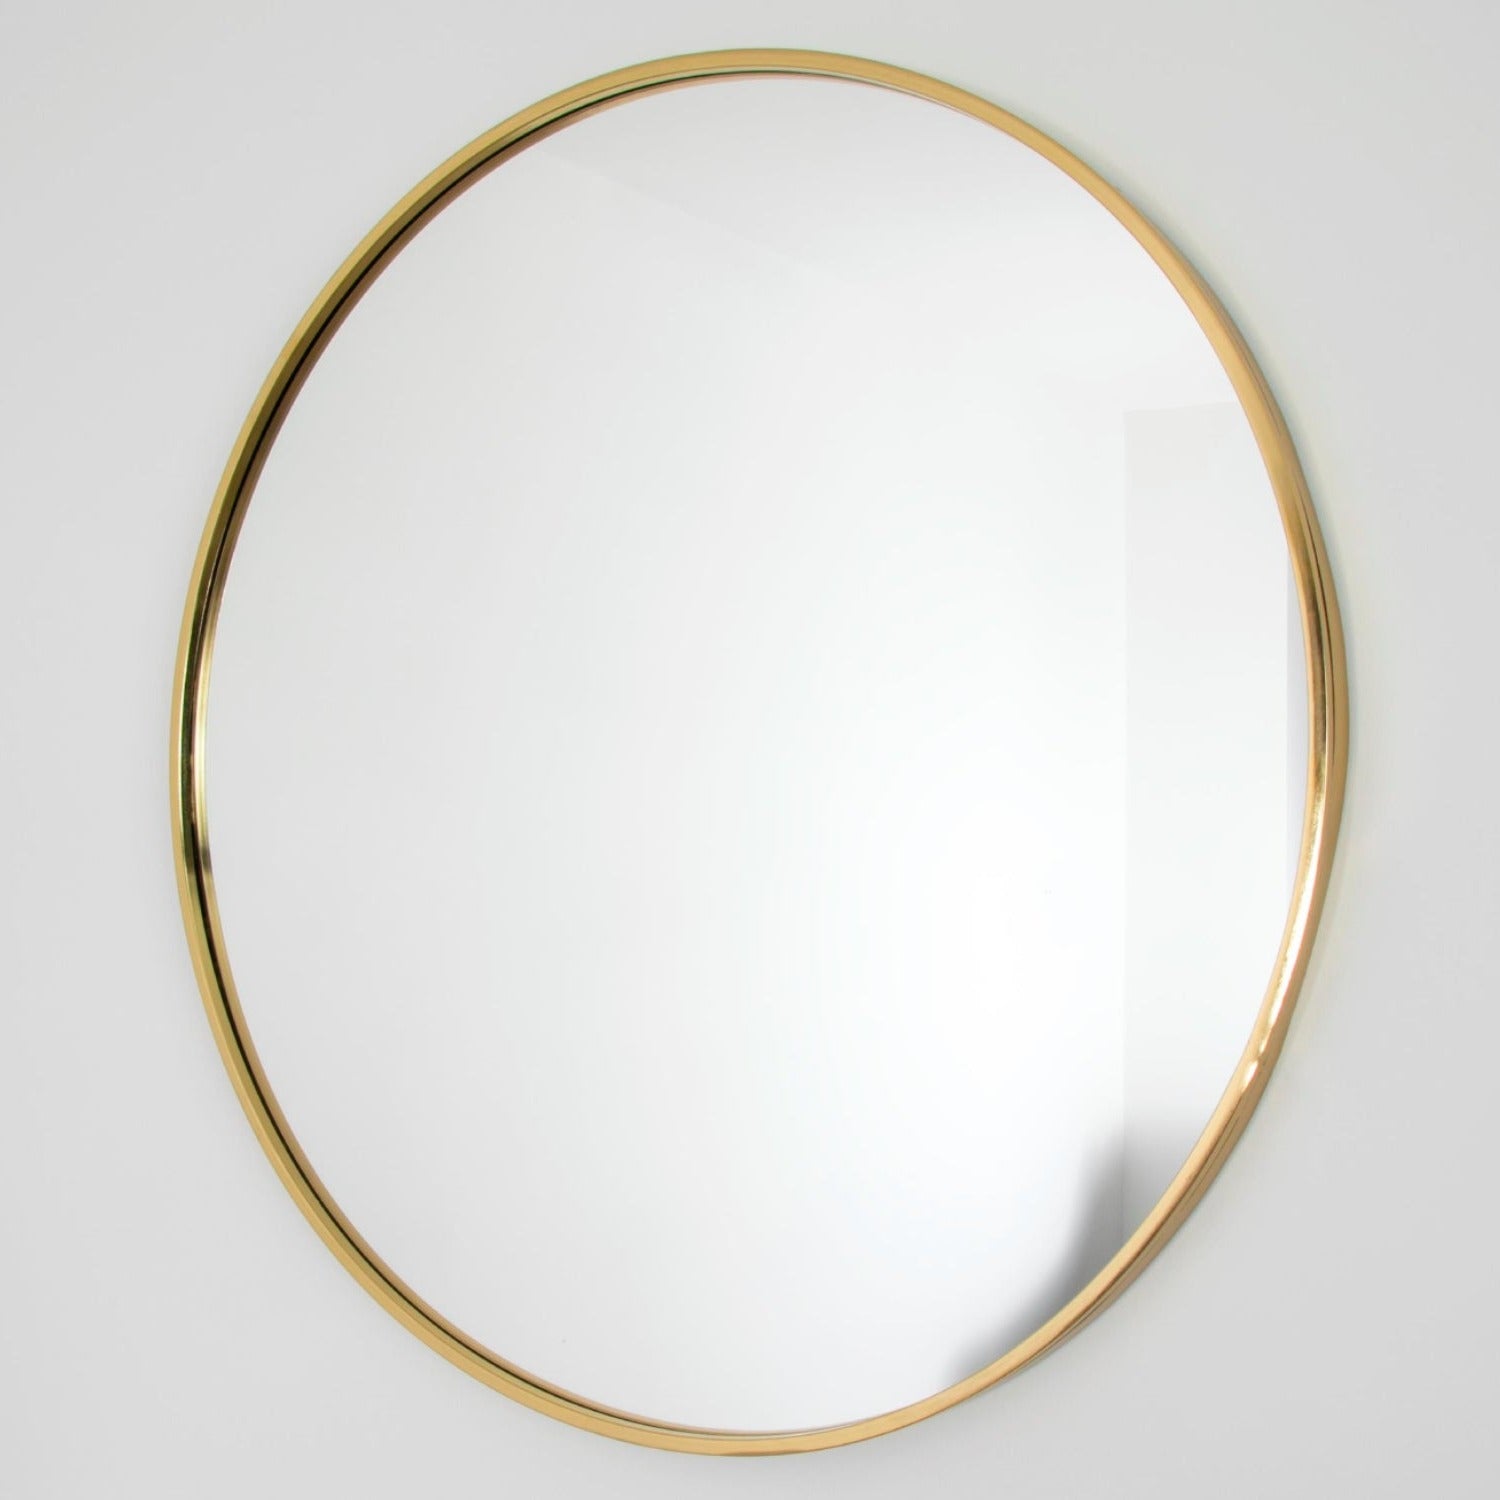 Gold manhattan round mirror - medium by Native